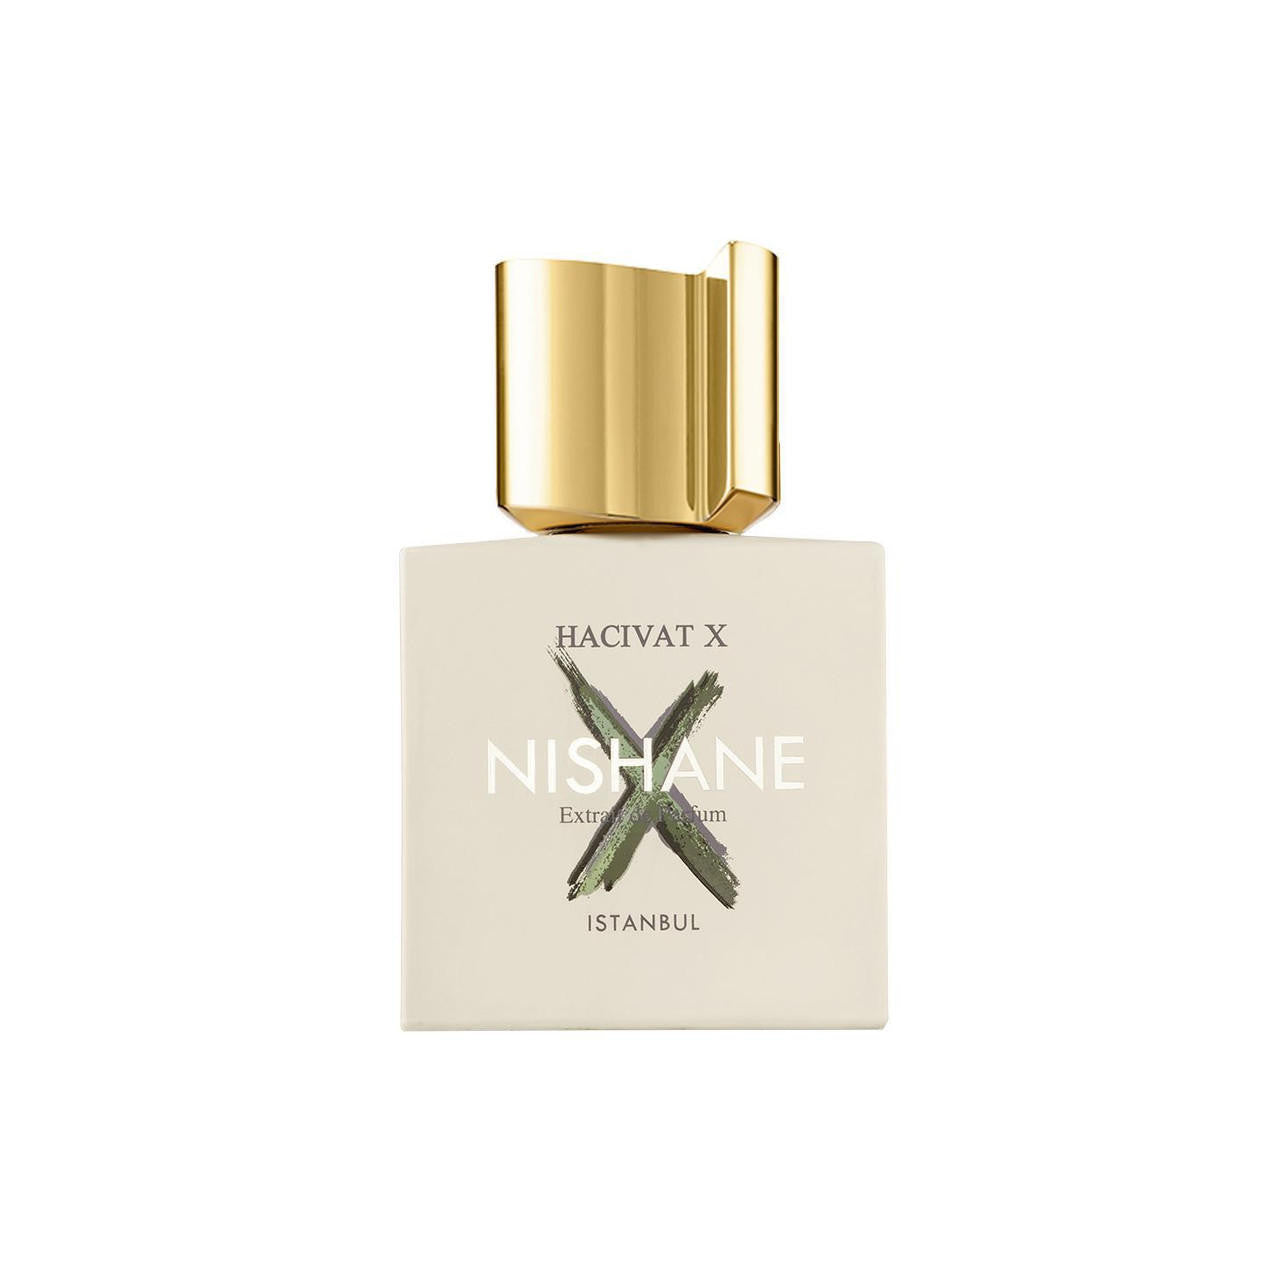  Nishane HACIVAT X Extrait de Parfum 